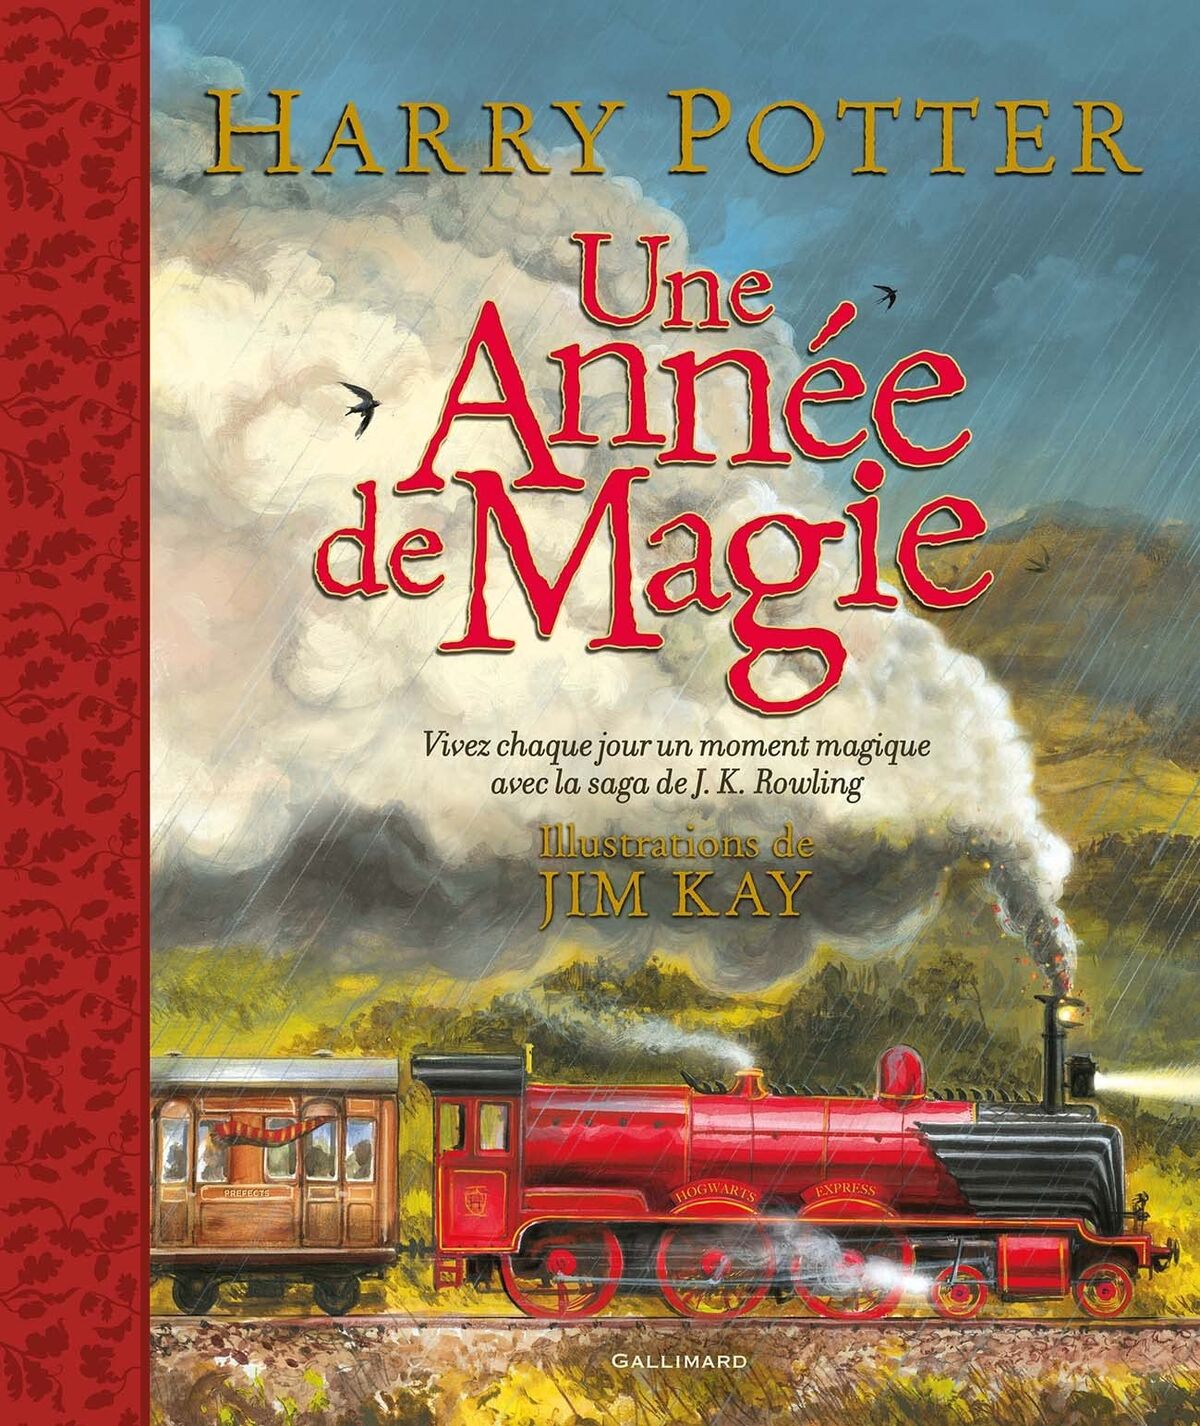 Harry Potter et la Coupe de Feu Illustration Jim Kay French